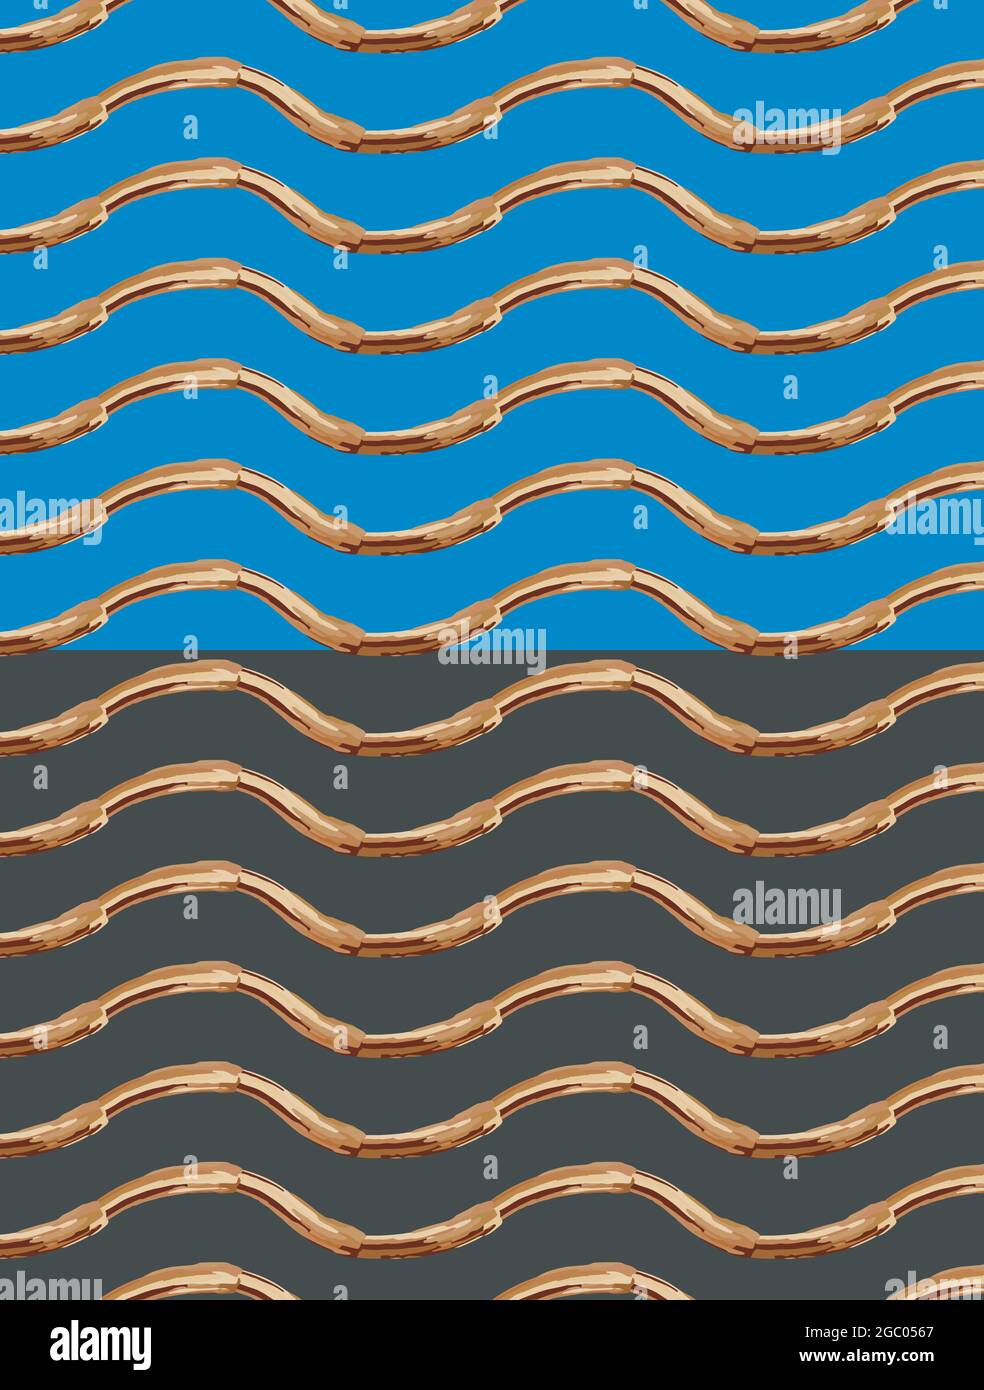 Tintenpinsel handbemalte Formen. Geometrische horizontale Wellen Gold Palette Farbe nahtlose Muster. Blauer, dunkelgrauer, leicht bearbeitbarer Hintergrund. Vektor Stock Vektor